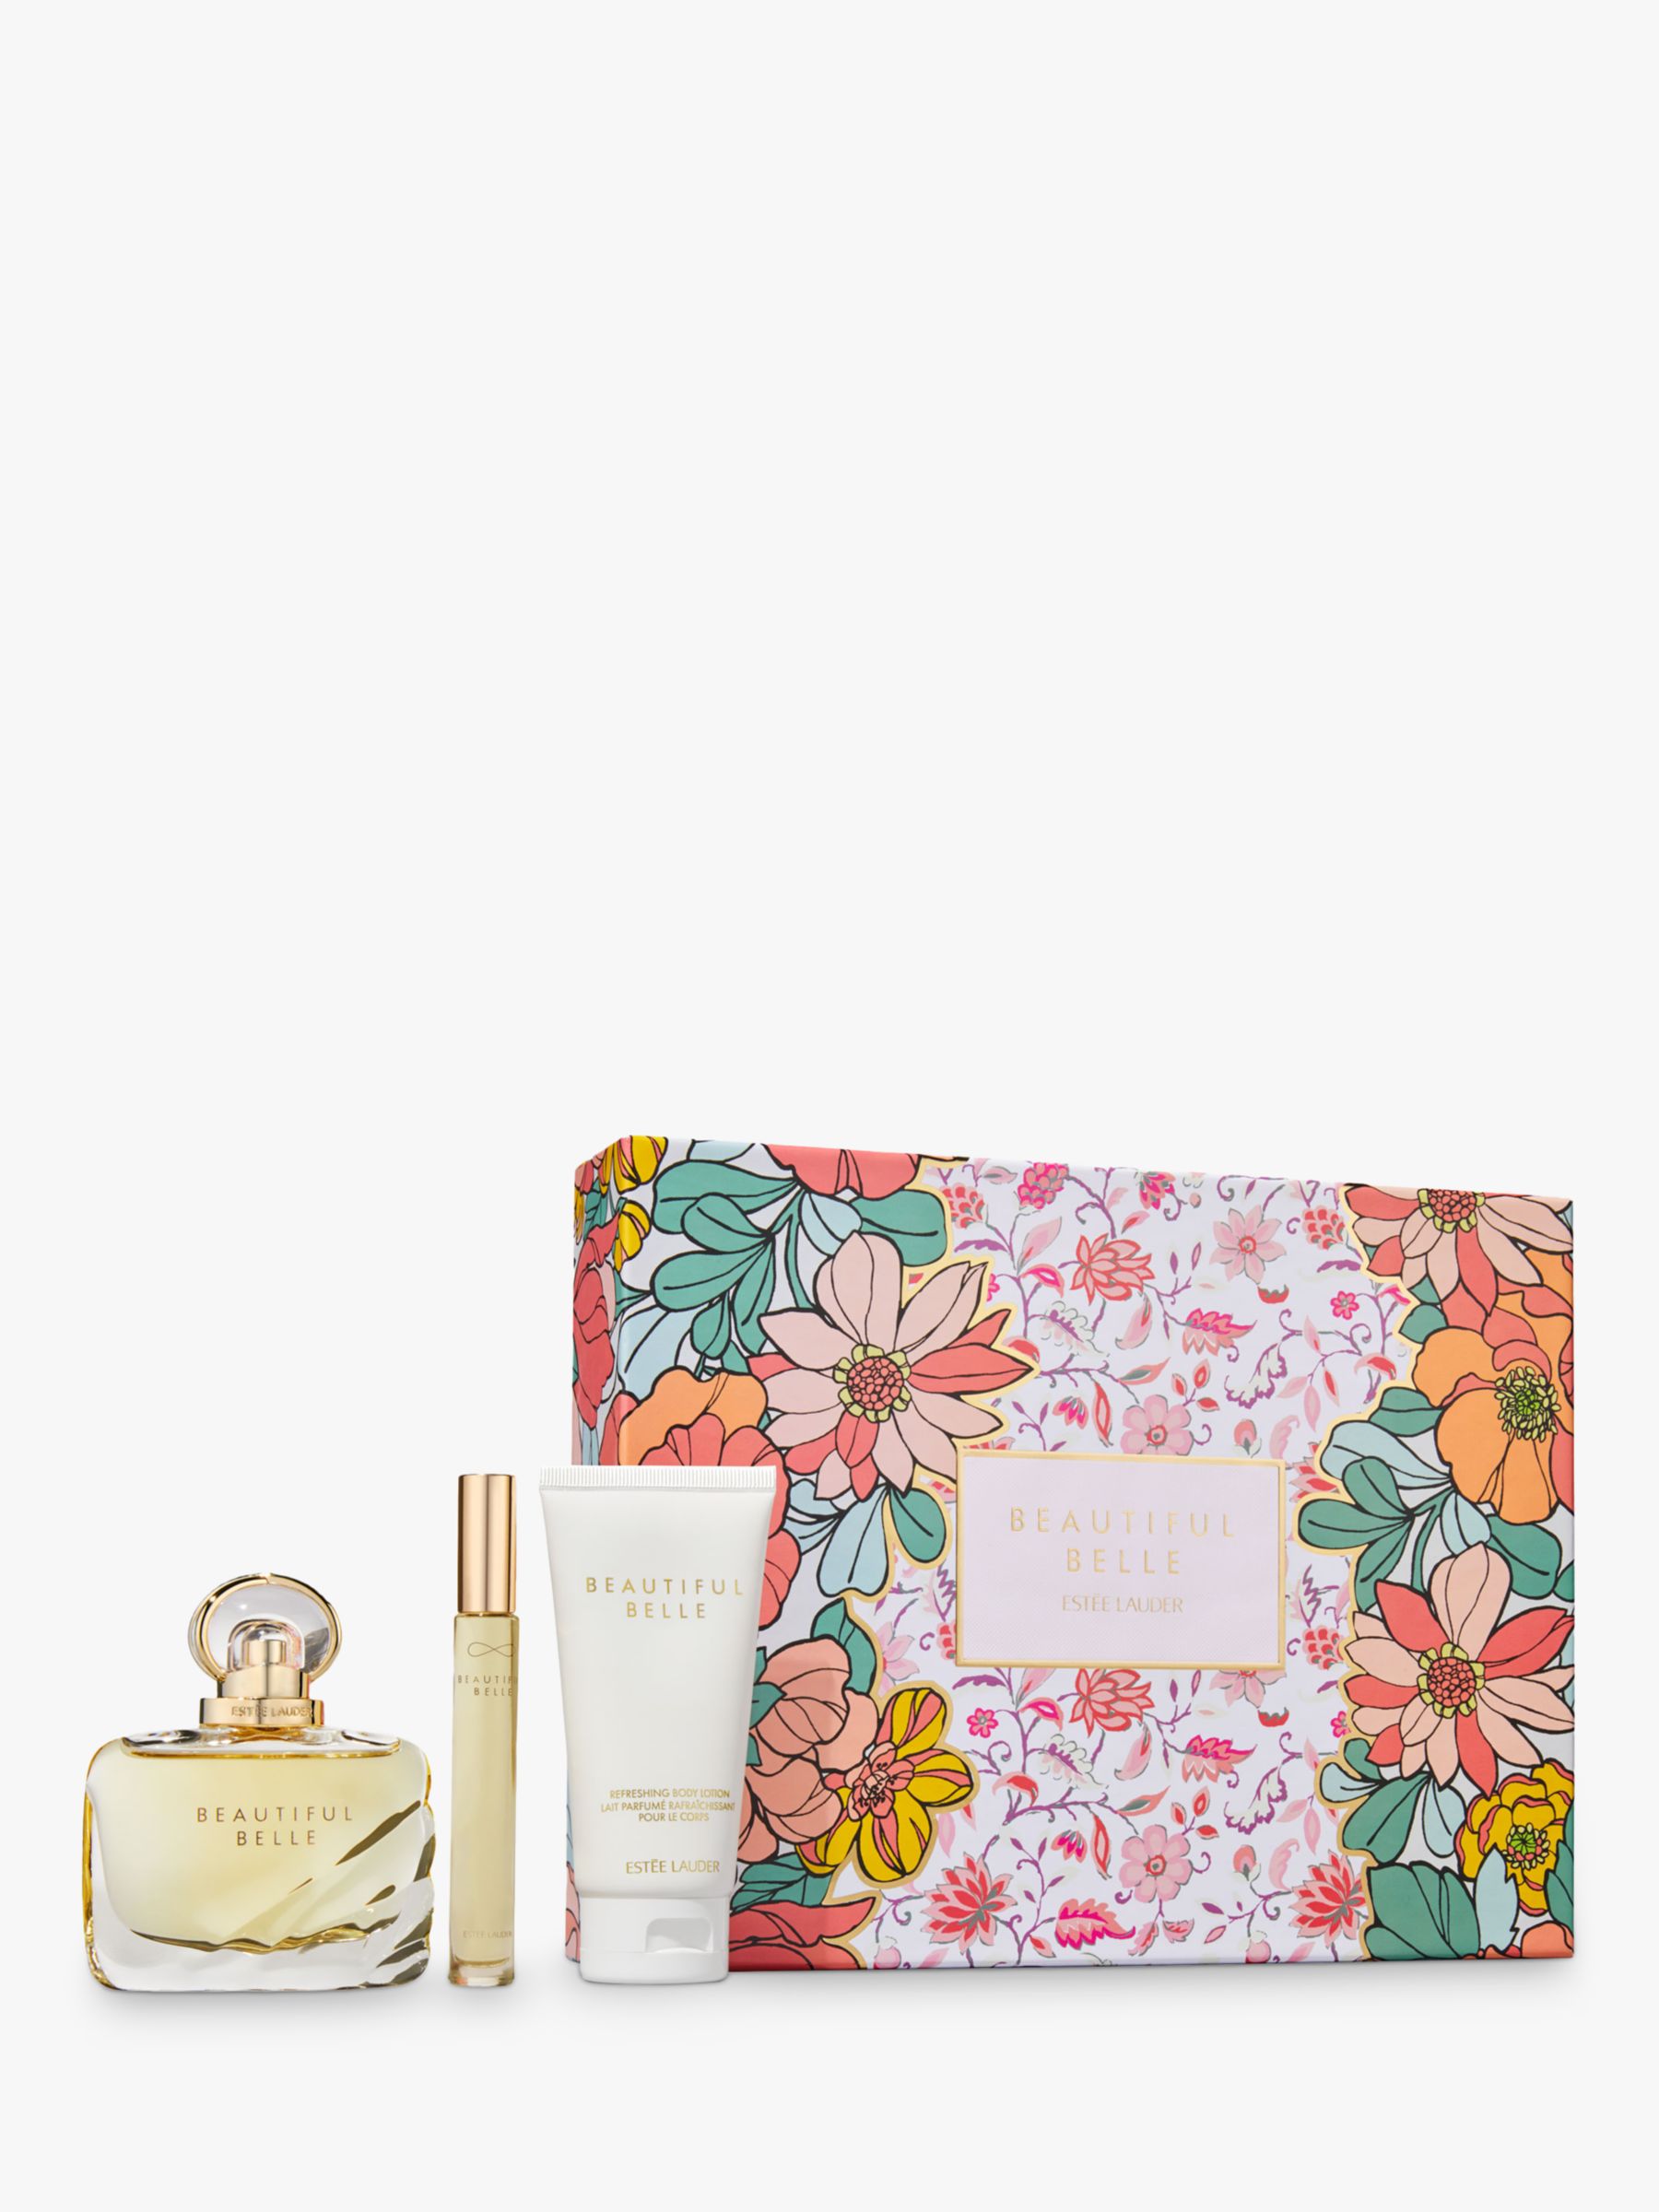 Estée Lauder Beautiful Belle Romantic Promises Fragrance